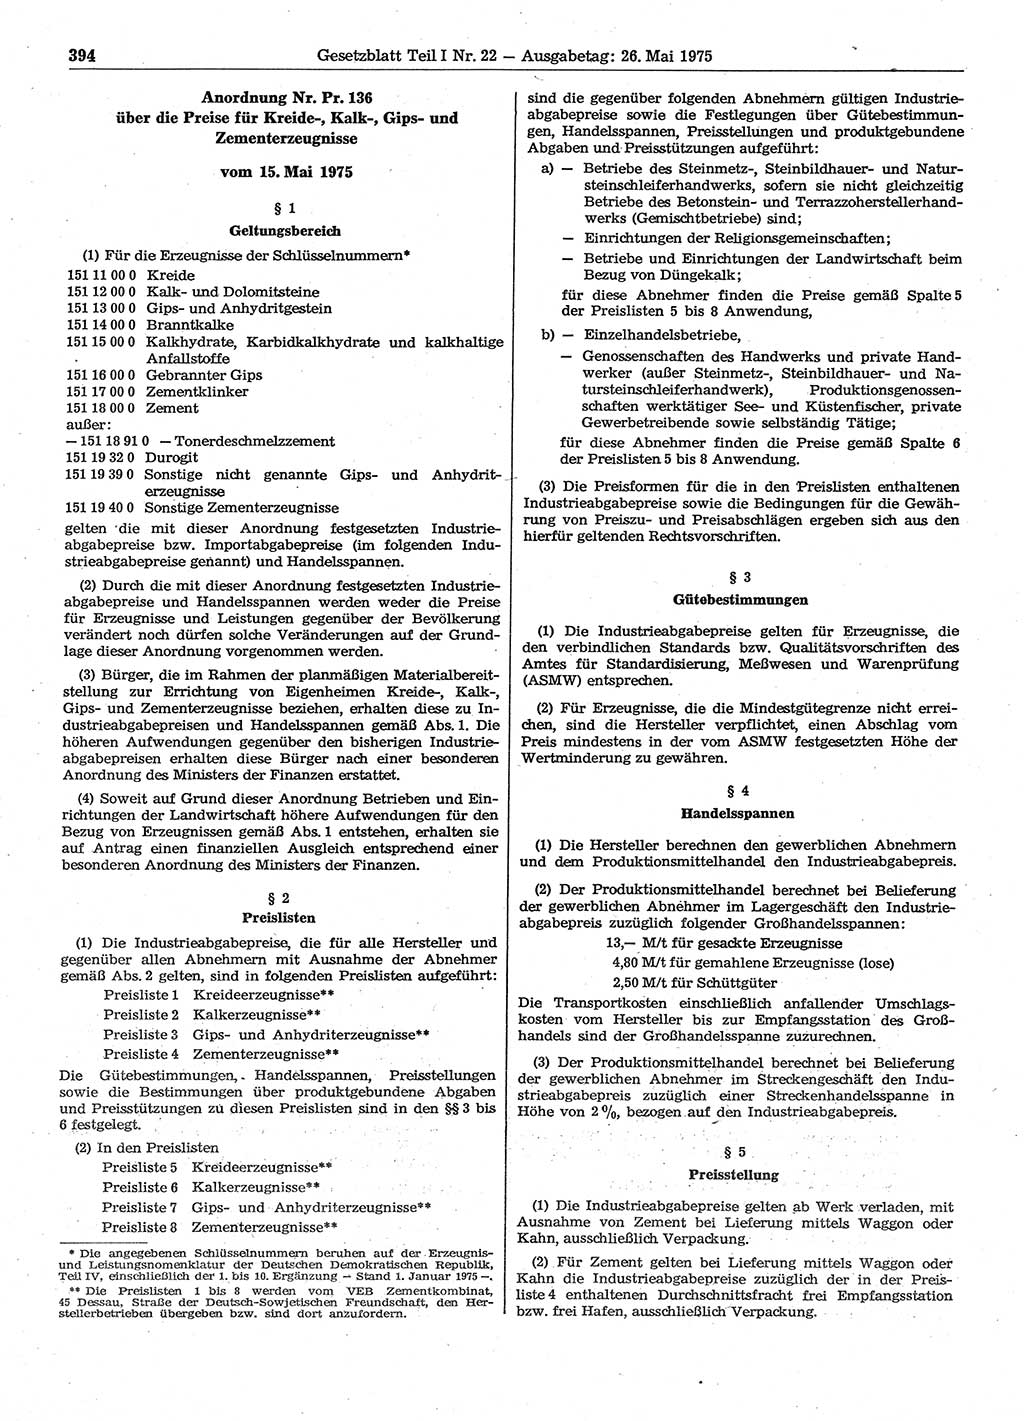 Gesetzblatt (GBl.) der Deutschen Demokratischen Republik (DDR) Teil Ⅰ 1975, Seite 394 (GBl. DDR Ⅰ 1975, S. 394)